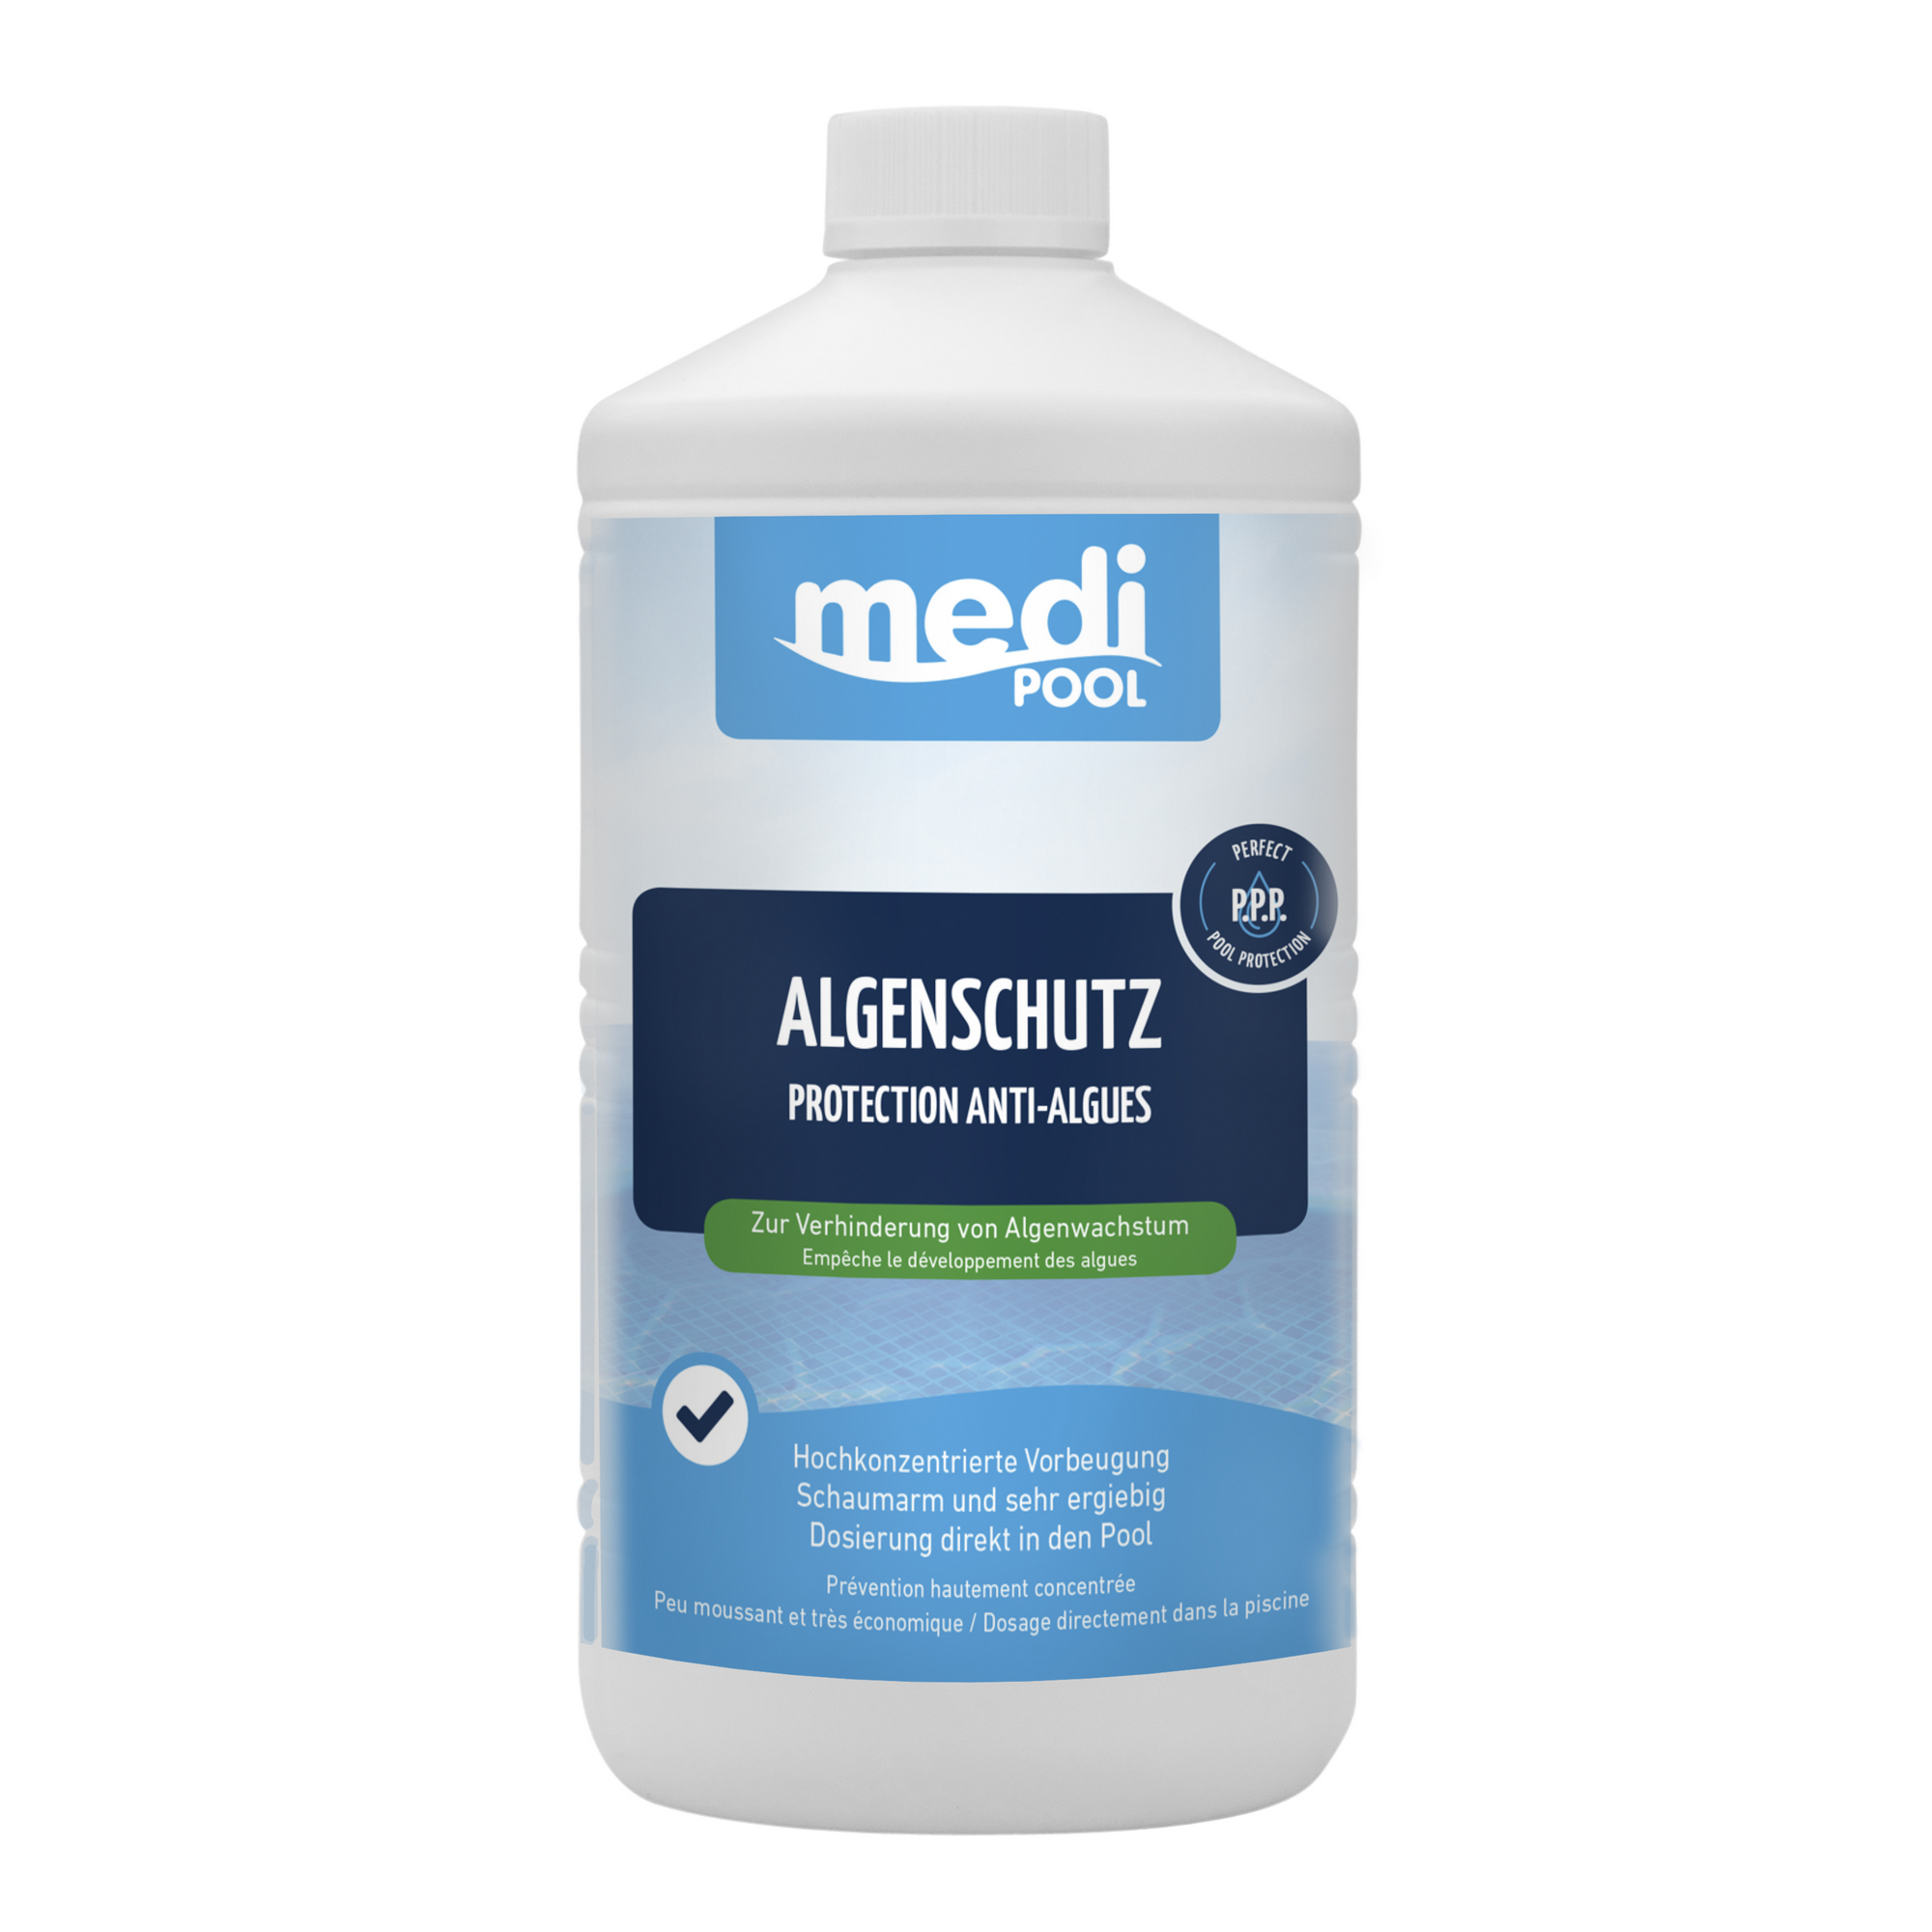 Algenschutz 1 Liter + product picture